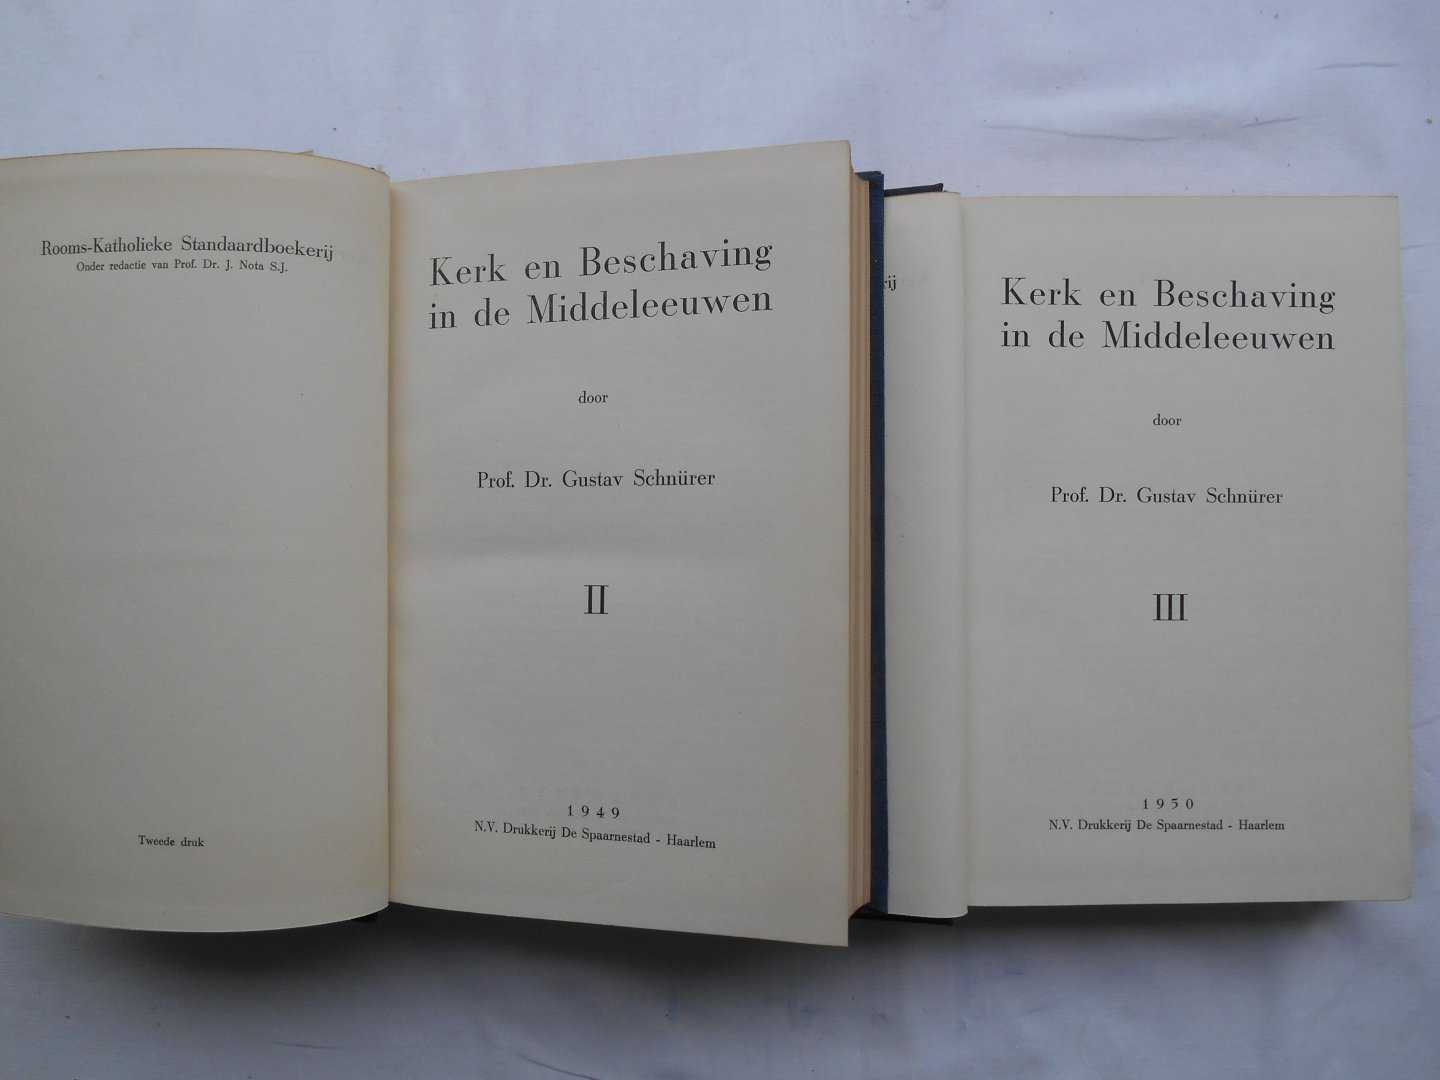 Schnürer, Prof. Dr. Gustav - Kerk en beschaving in de Middeleeuwen, deel II